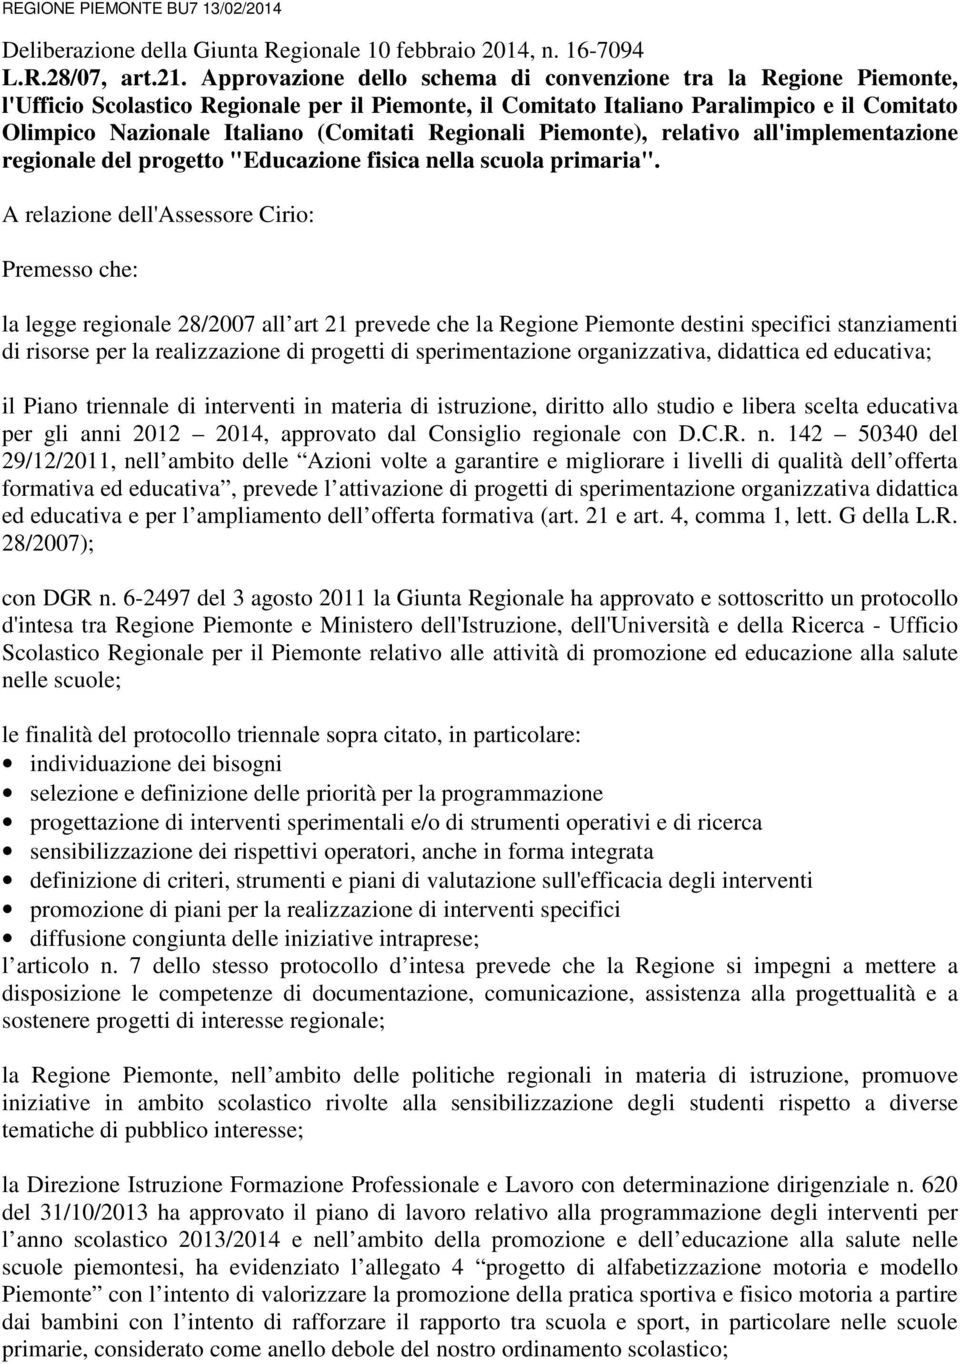 Regionali Piemonte), relativo all'implementazione regionale del progetto "Educazione fisica nella scuola primaria".